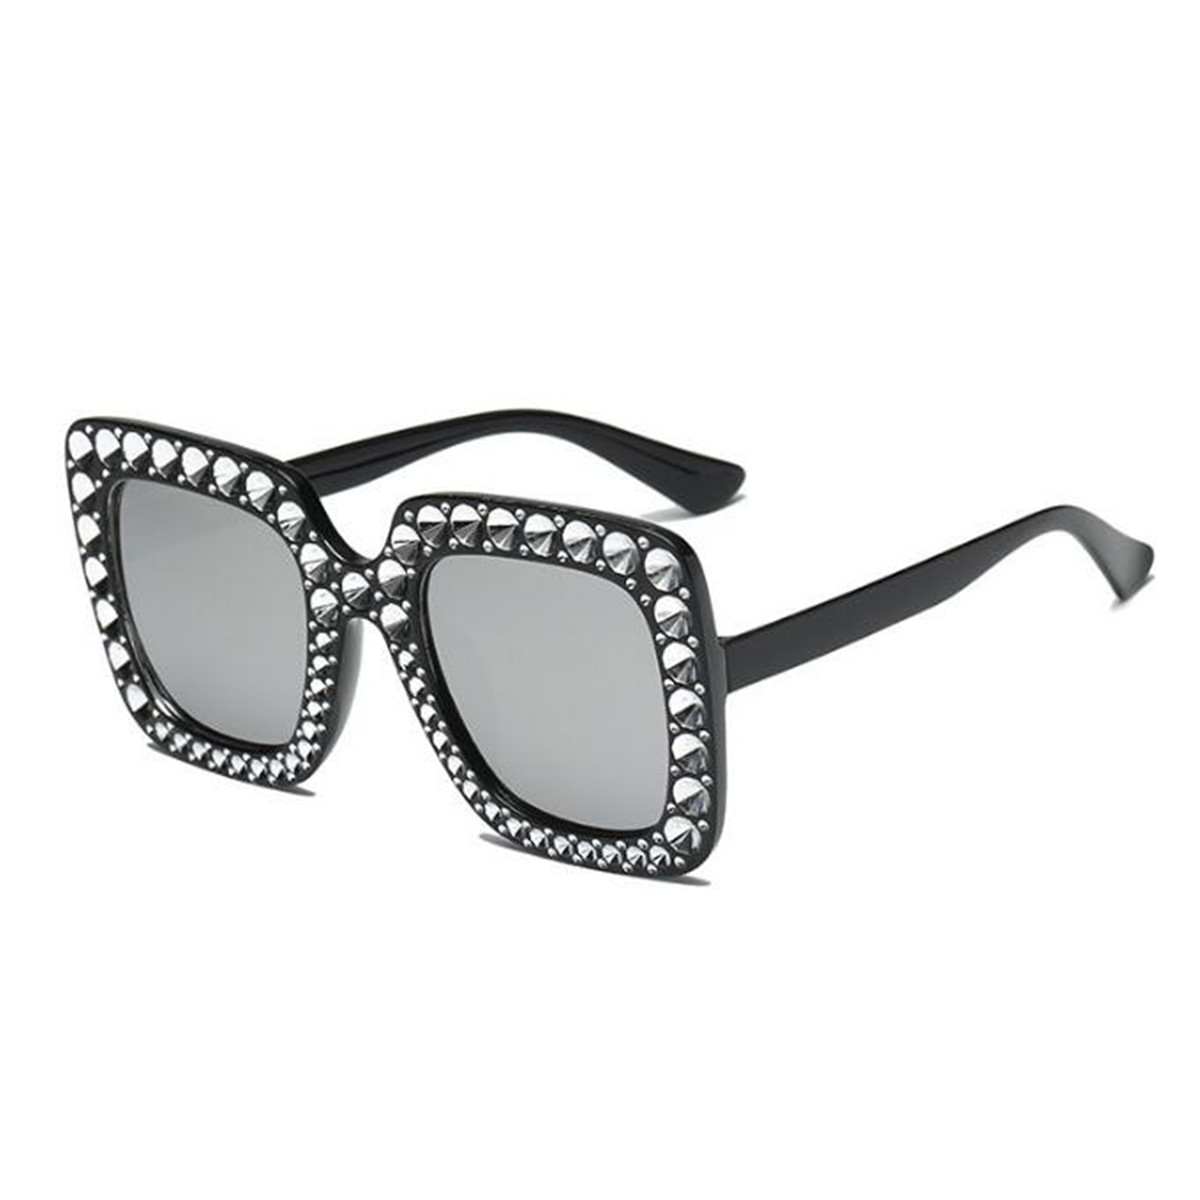 Luxury Oversized Square Frame Bling Rhinestone Sunglasses Women Fashion Shades Ebay